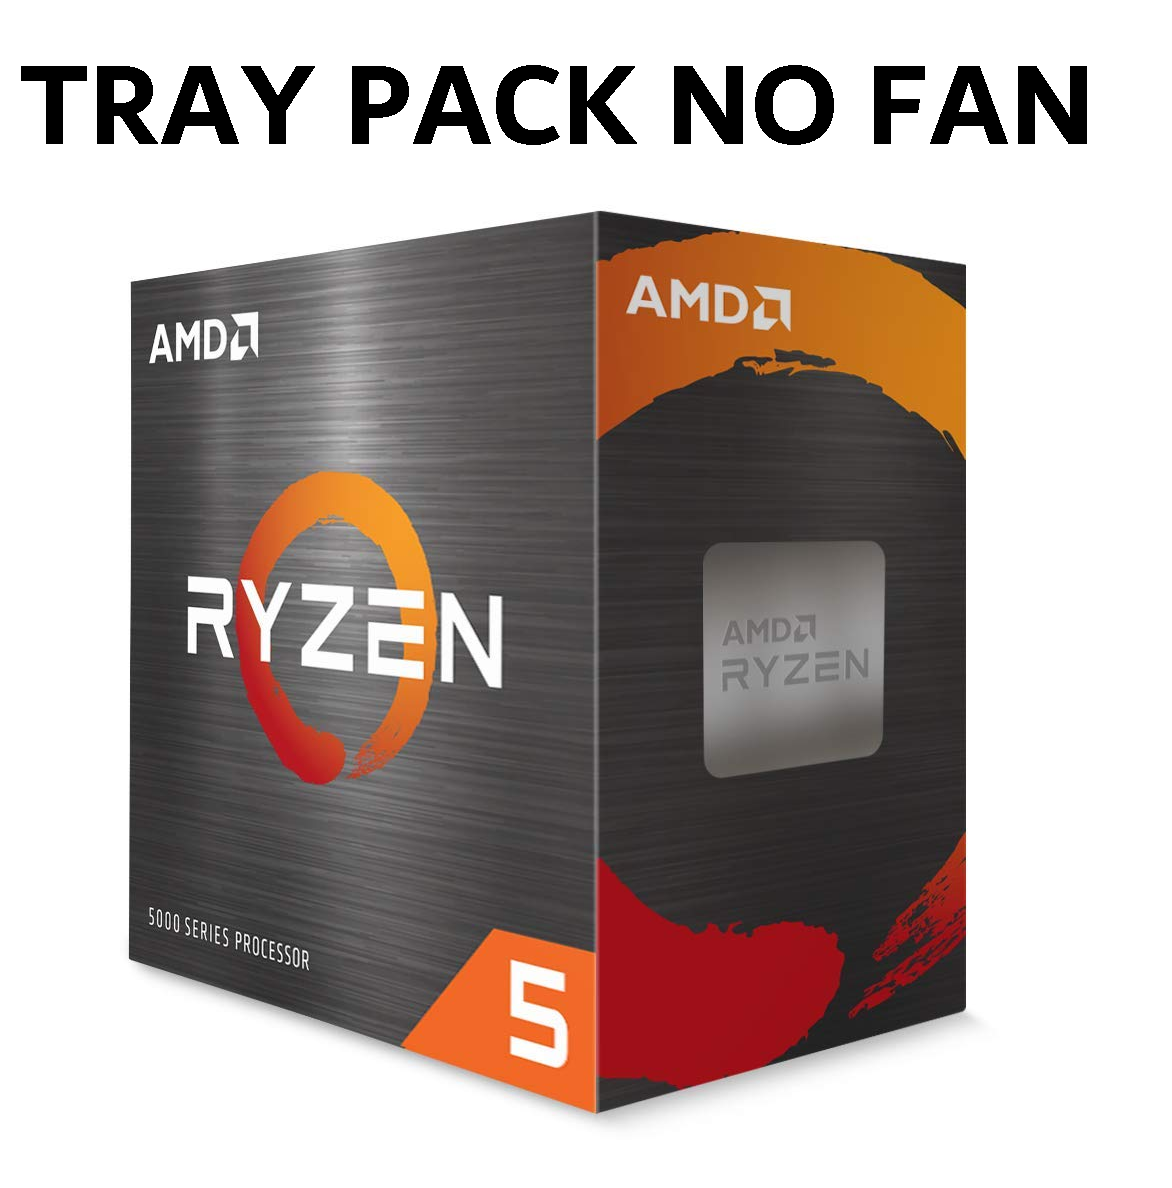 (Clamshell Or Installed On MBs) AMD Ryzen 5 1600 'TRAY', YD1600BBM6IAE 6 Core/12 Threads AM4 CPU, No Fan, 1YW (AMDCPU)(AMDBOX)(TRAY-P)